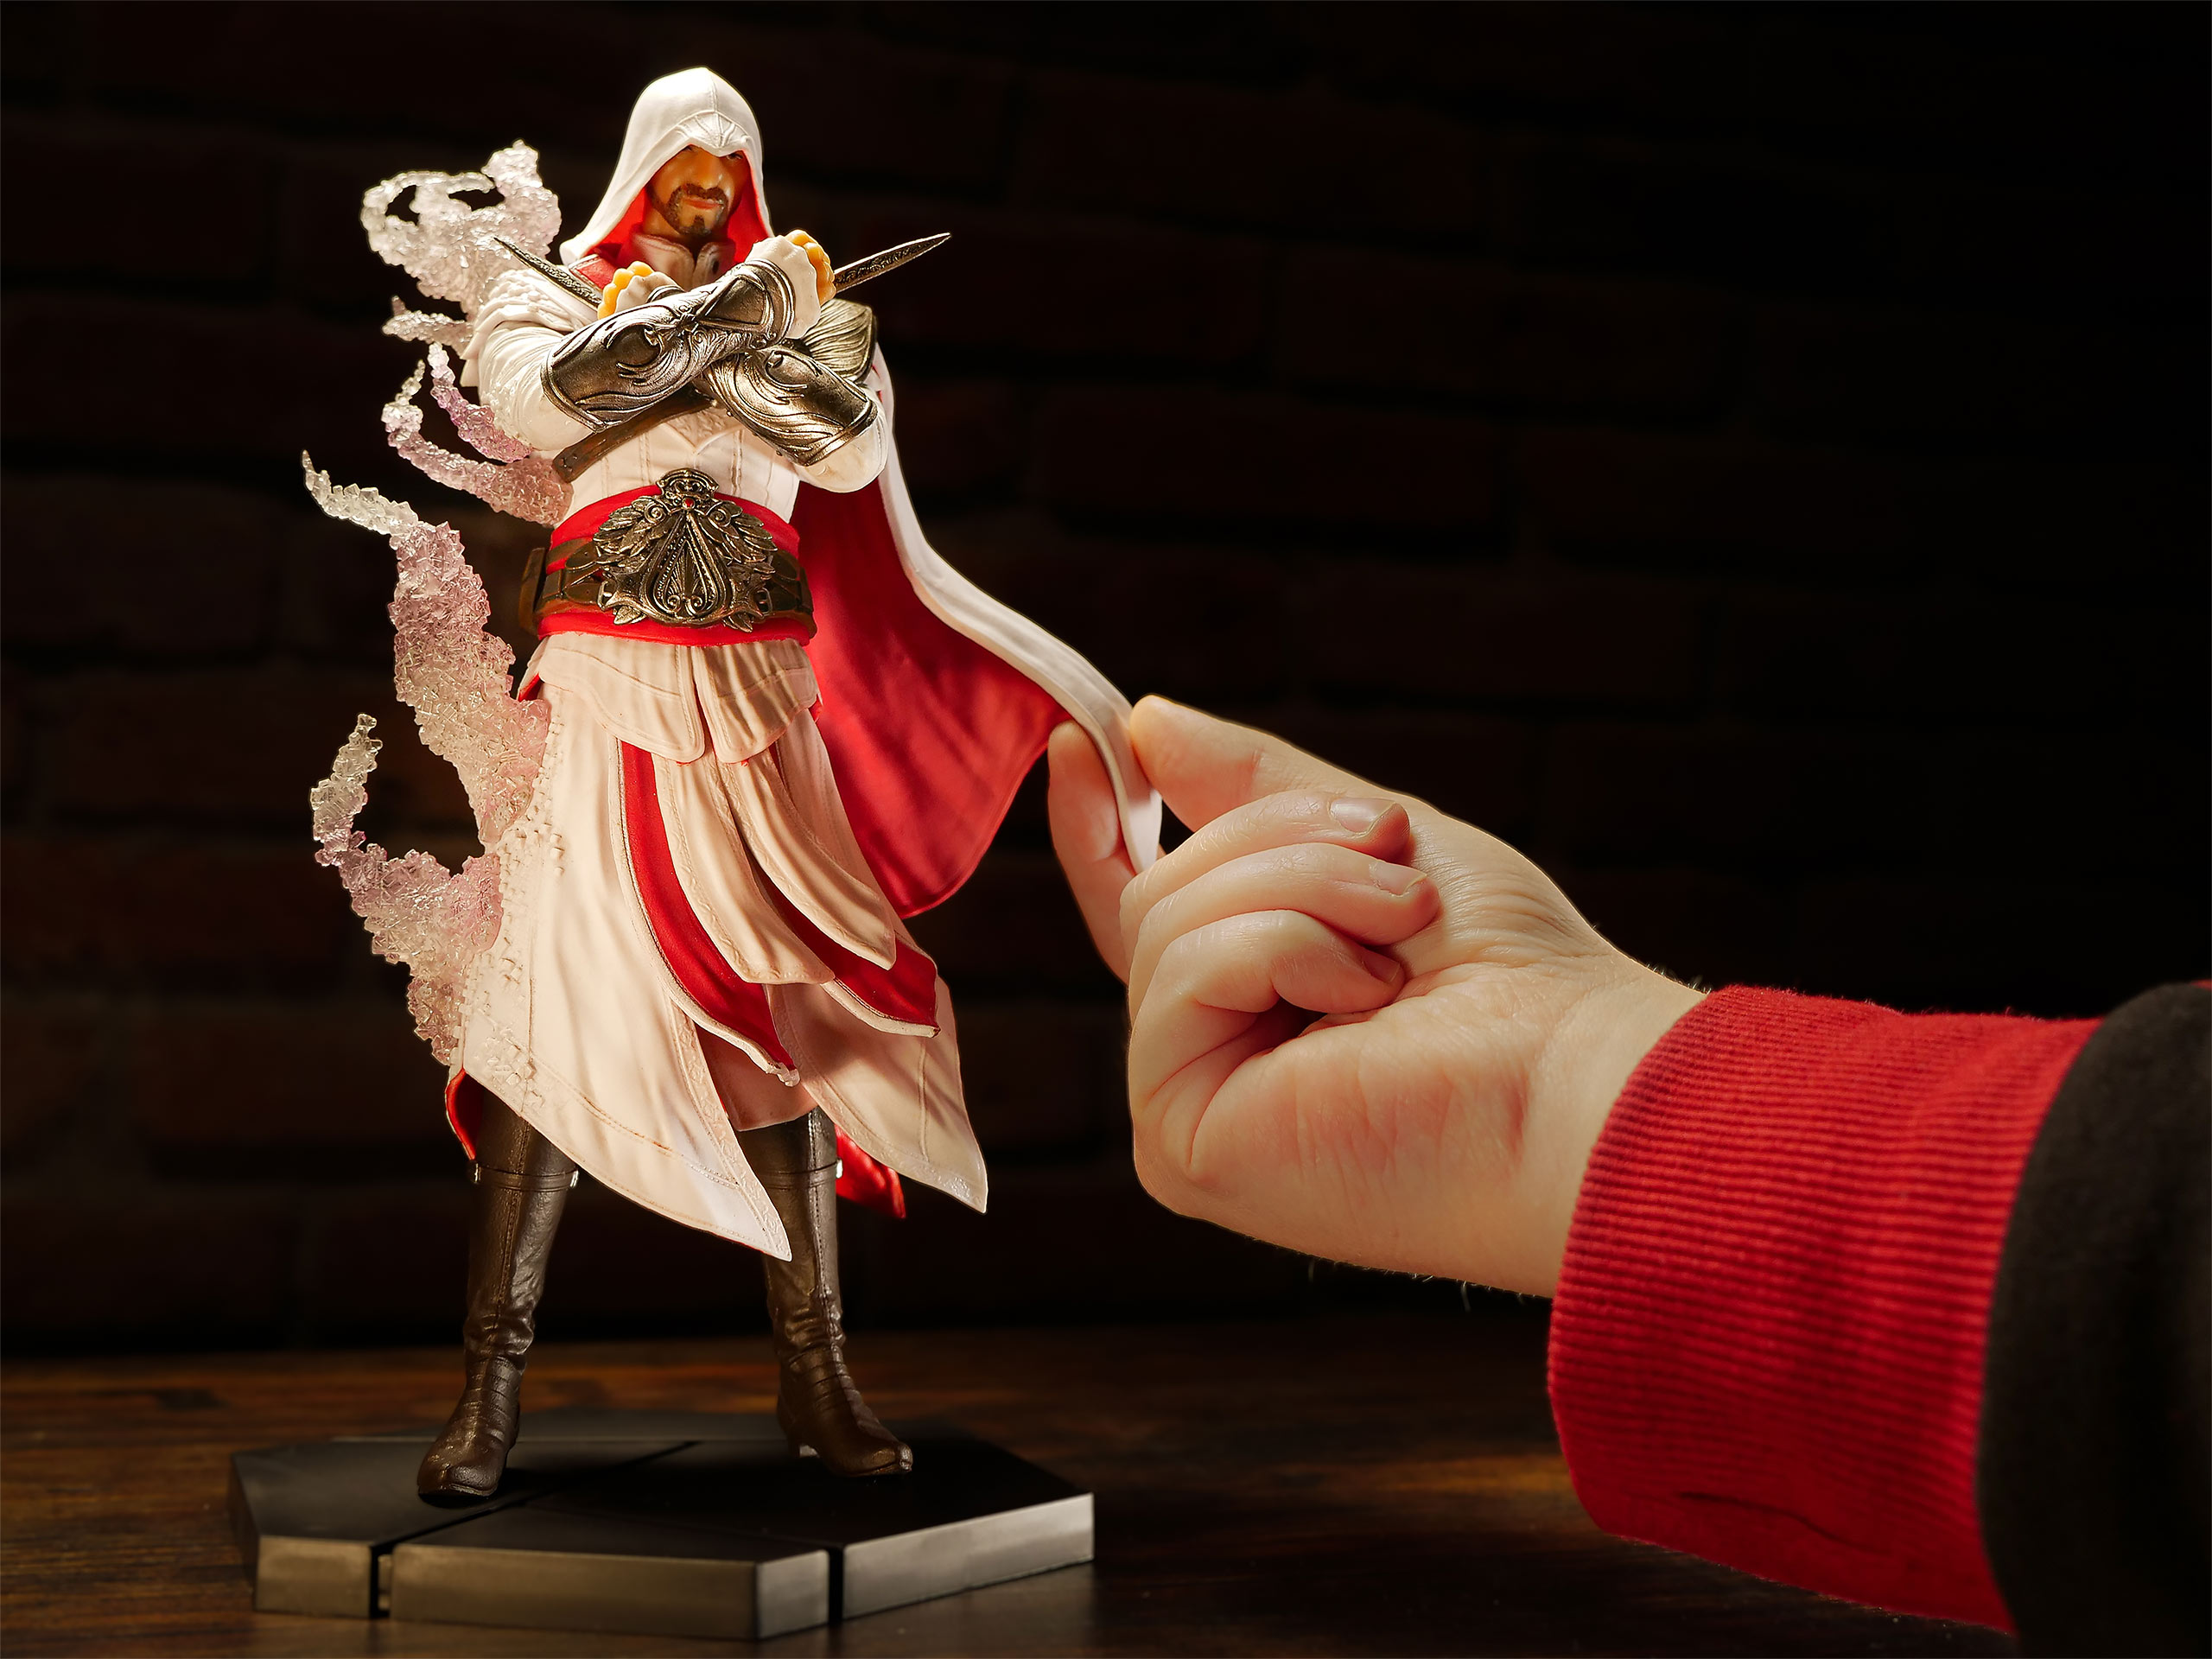 Assassin's Creed - Master Assassin Ezio Figure 25 cm